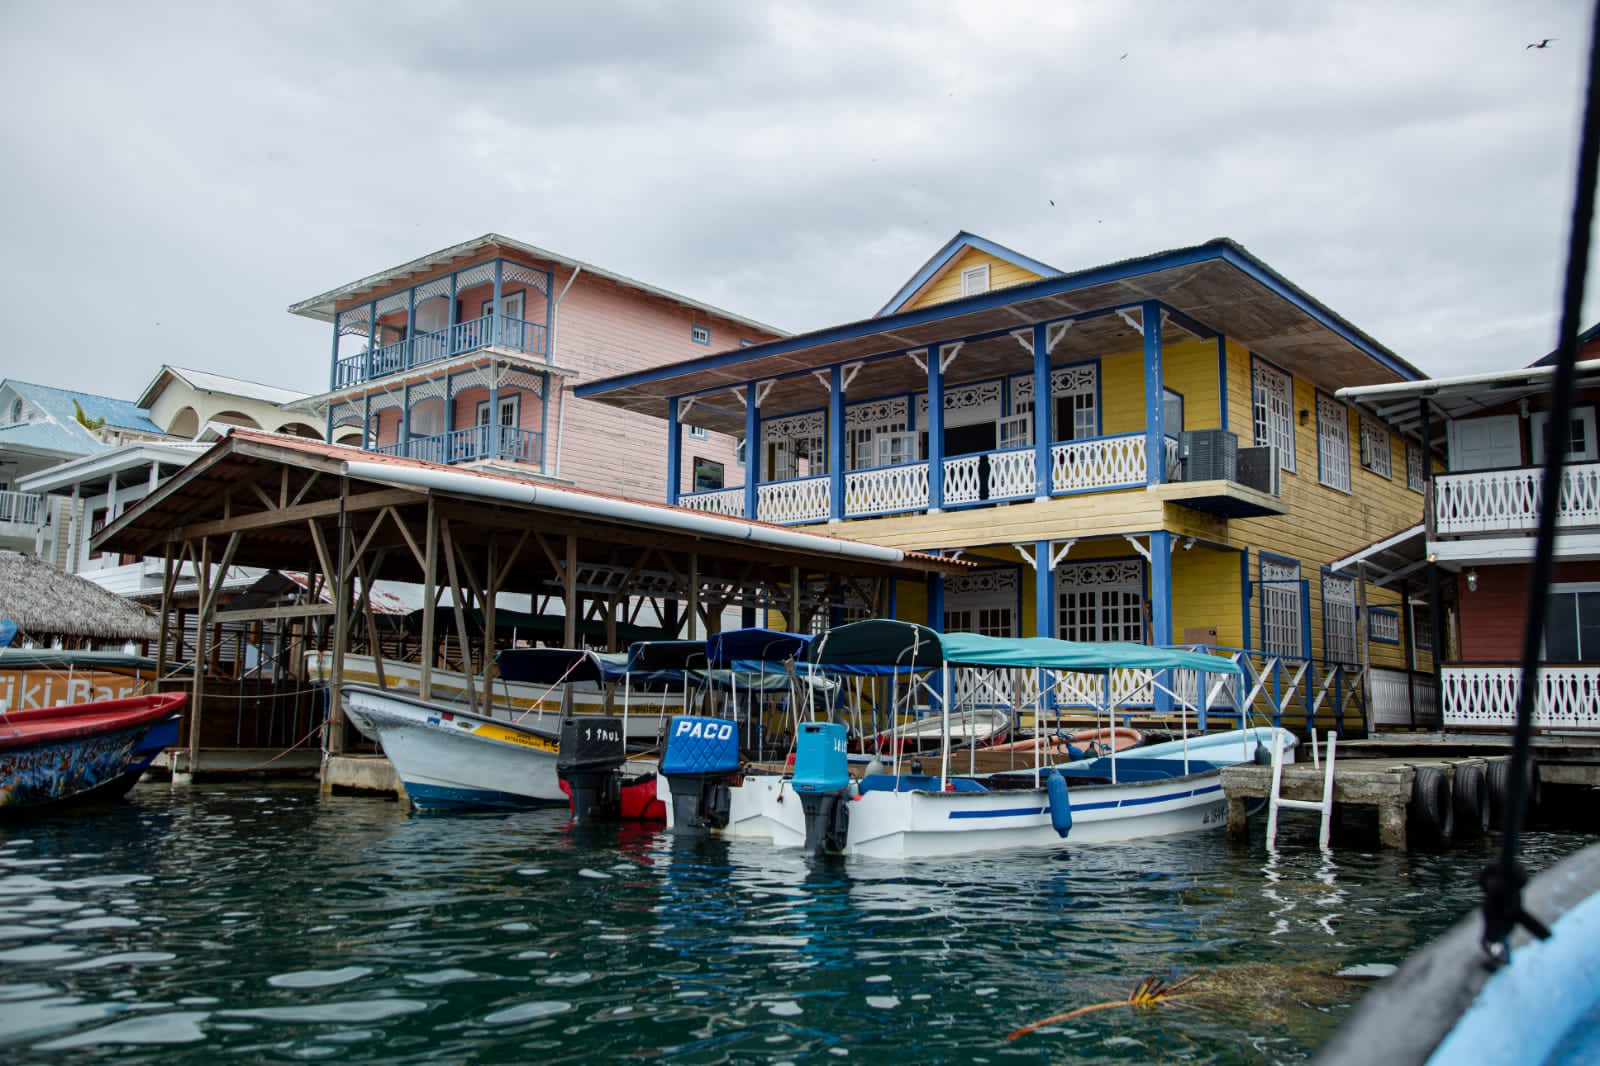 Bocas del Toro con $100 millones en ejecución bajo el Plan Maestro de Turismo Sostenible